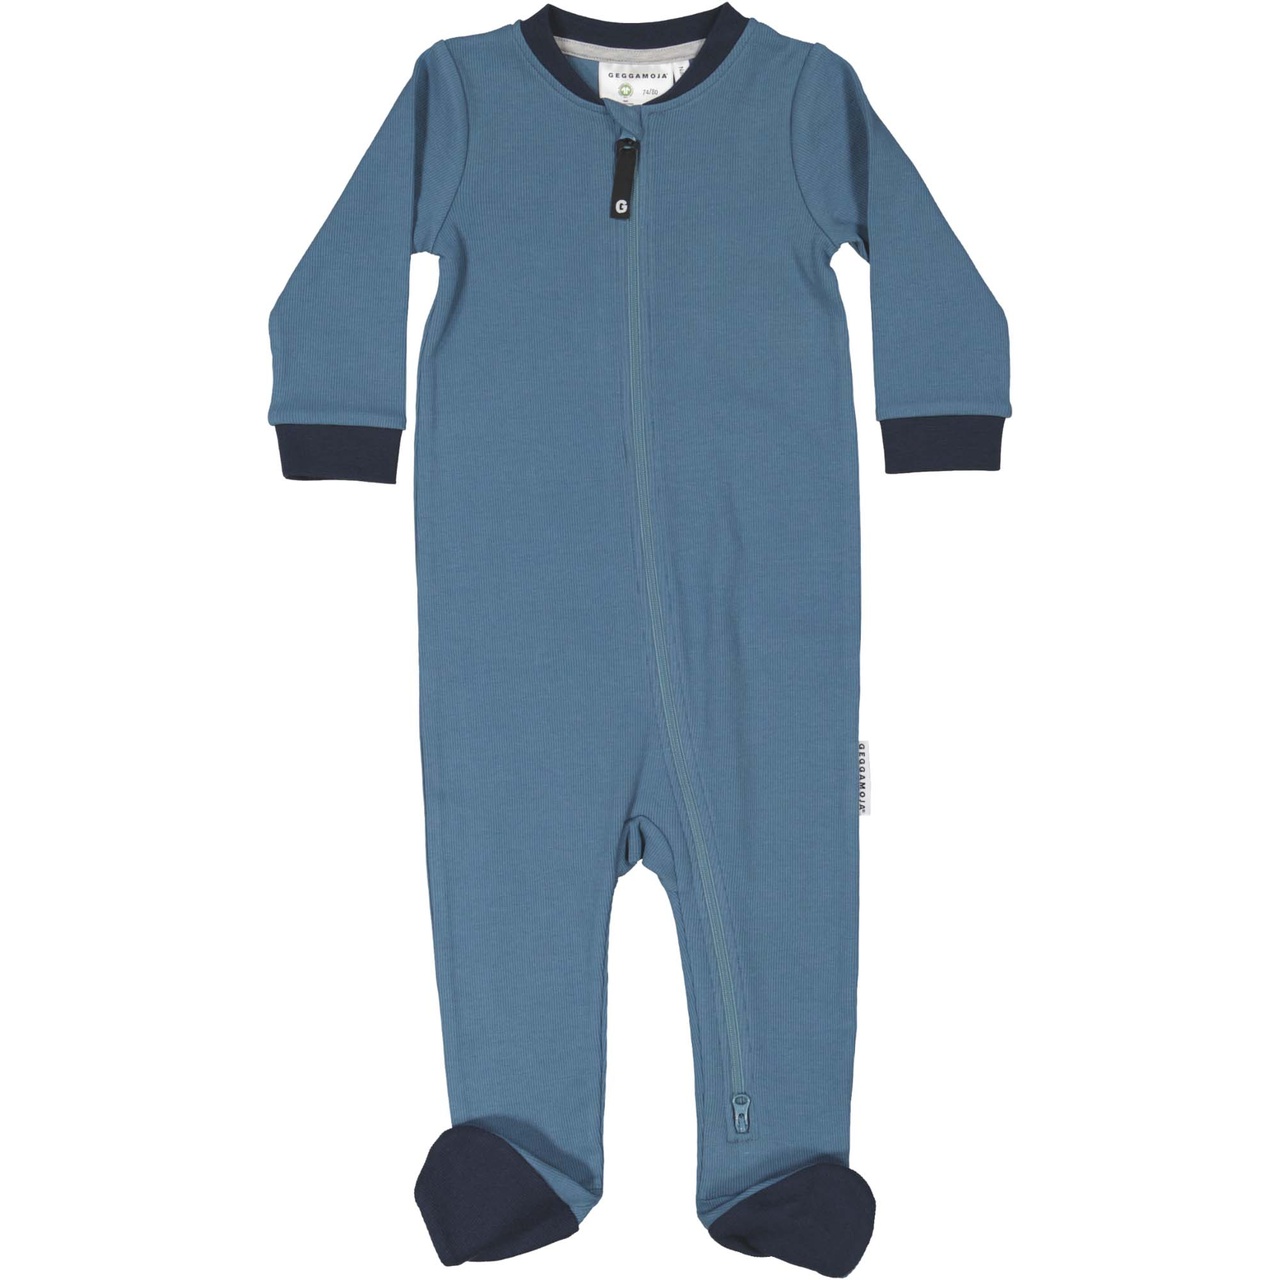 Babypyjamas i bomull Blå 50/56